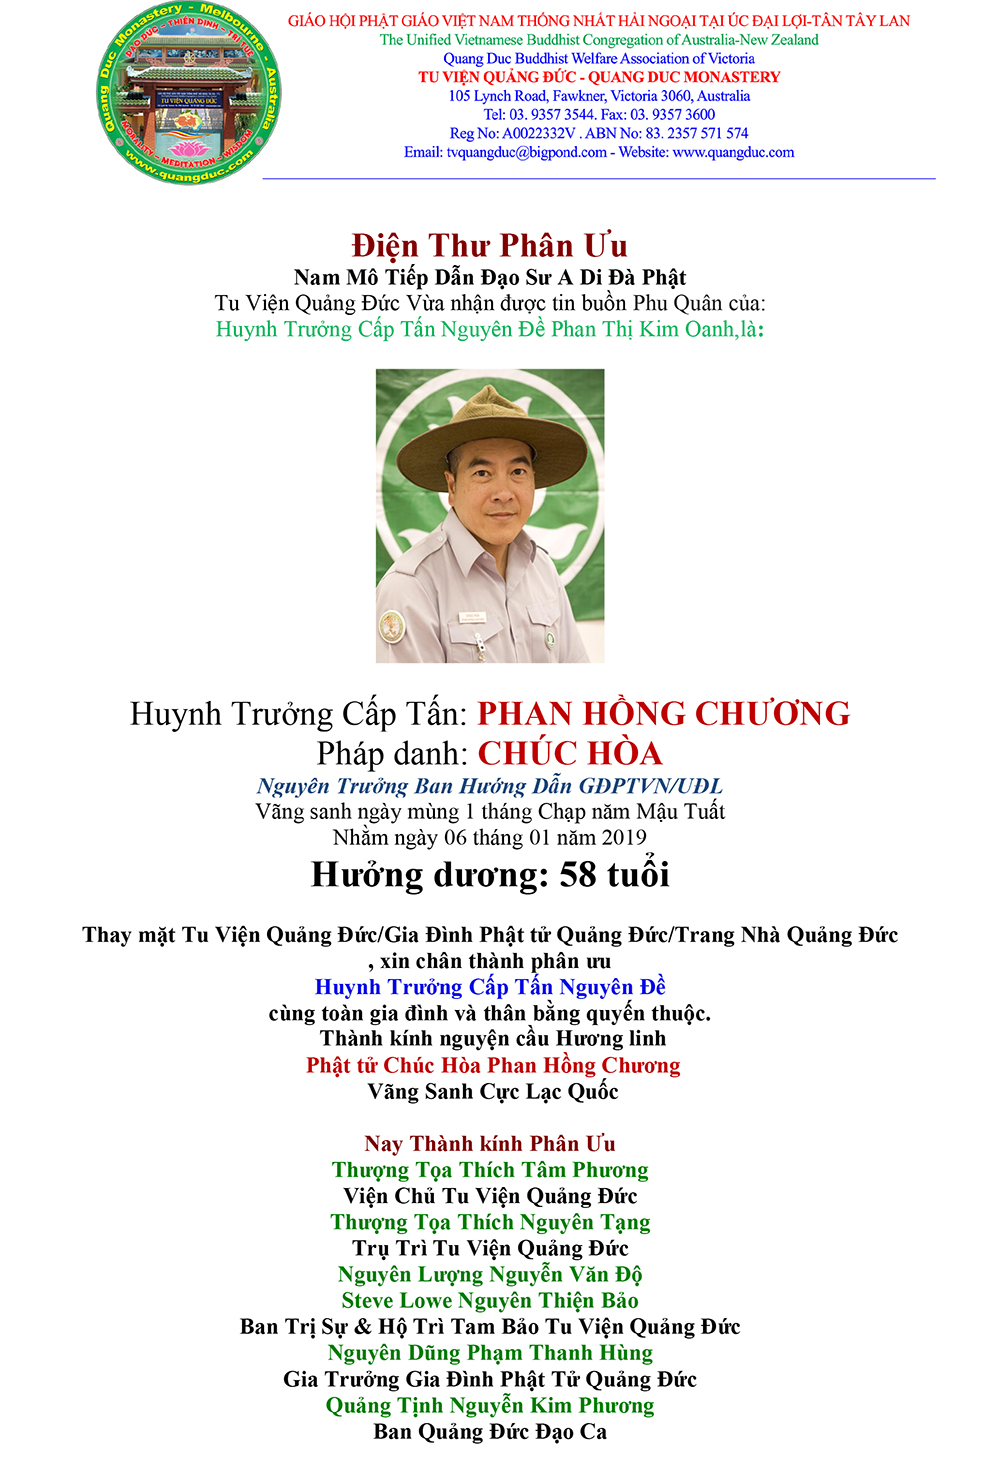 Dien Thu Phan Uu gia dinh Htr Chuc Hoa Phan Hong Chuong.Finaljpg